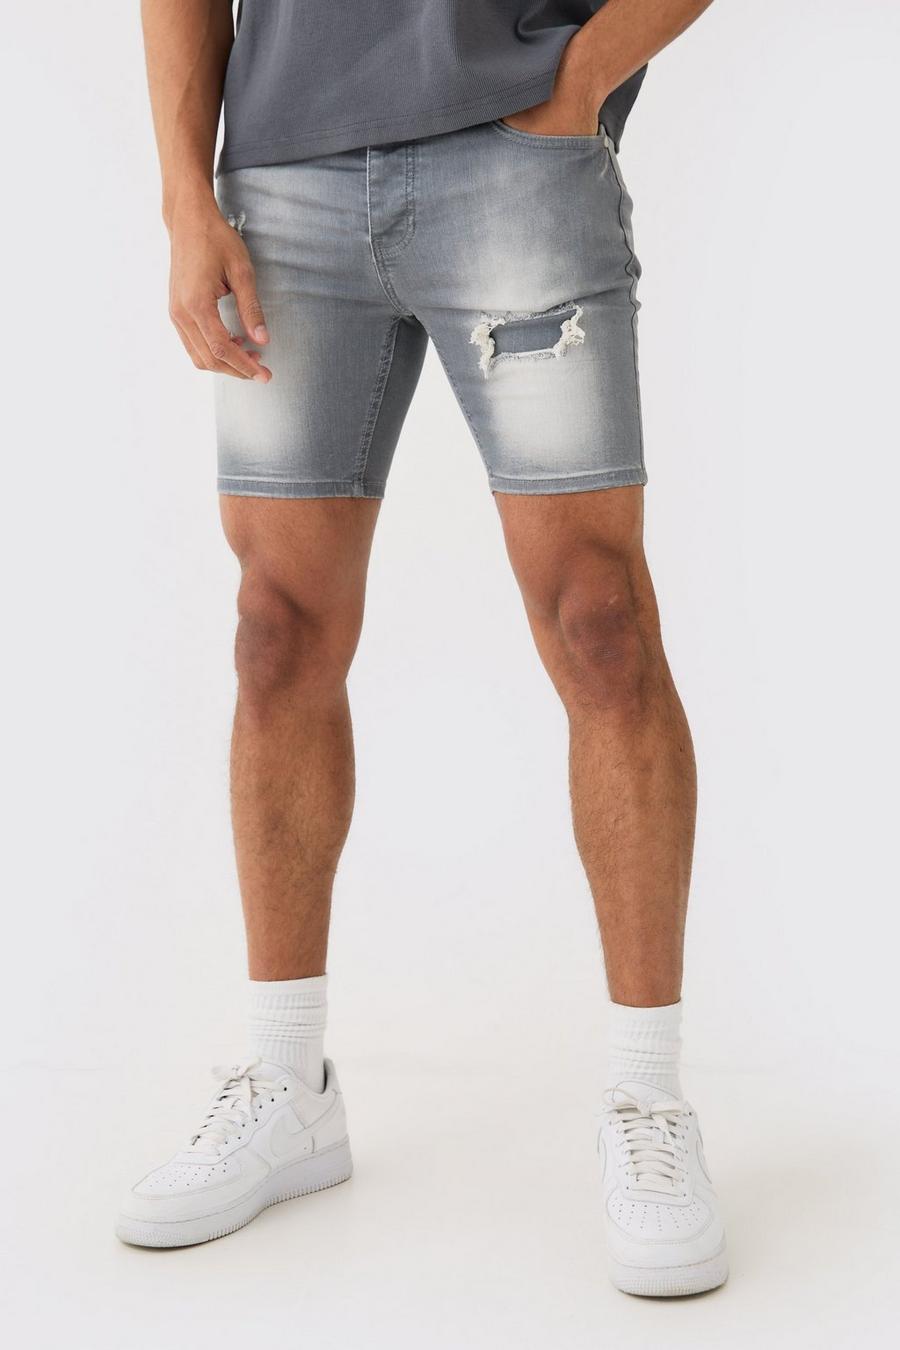 Pantaloncini in denim Stretch Skinny Fit grigi con strappi & rattoppi, Grey